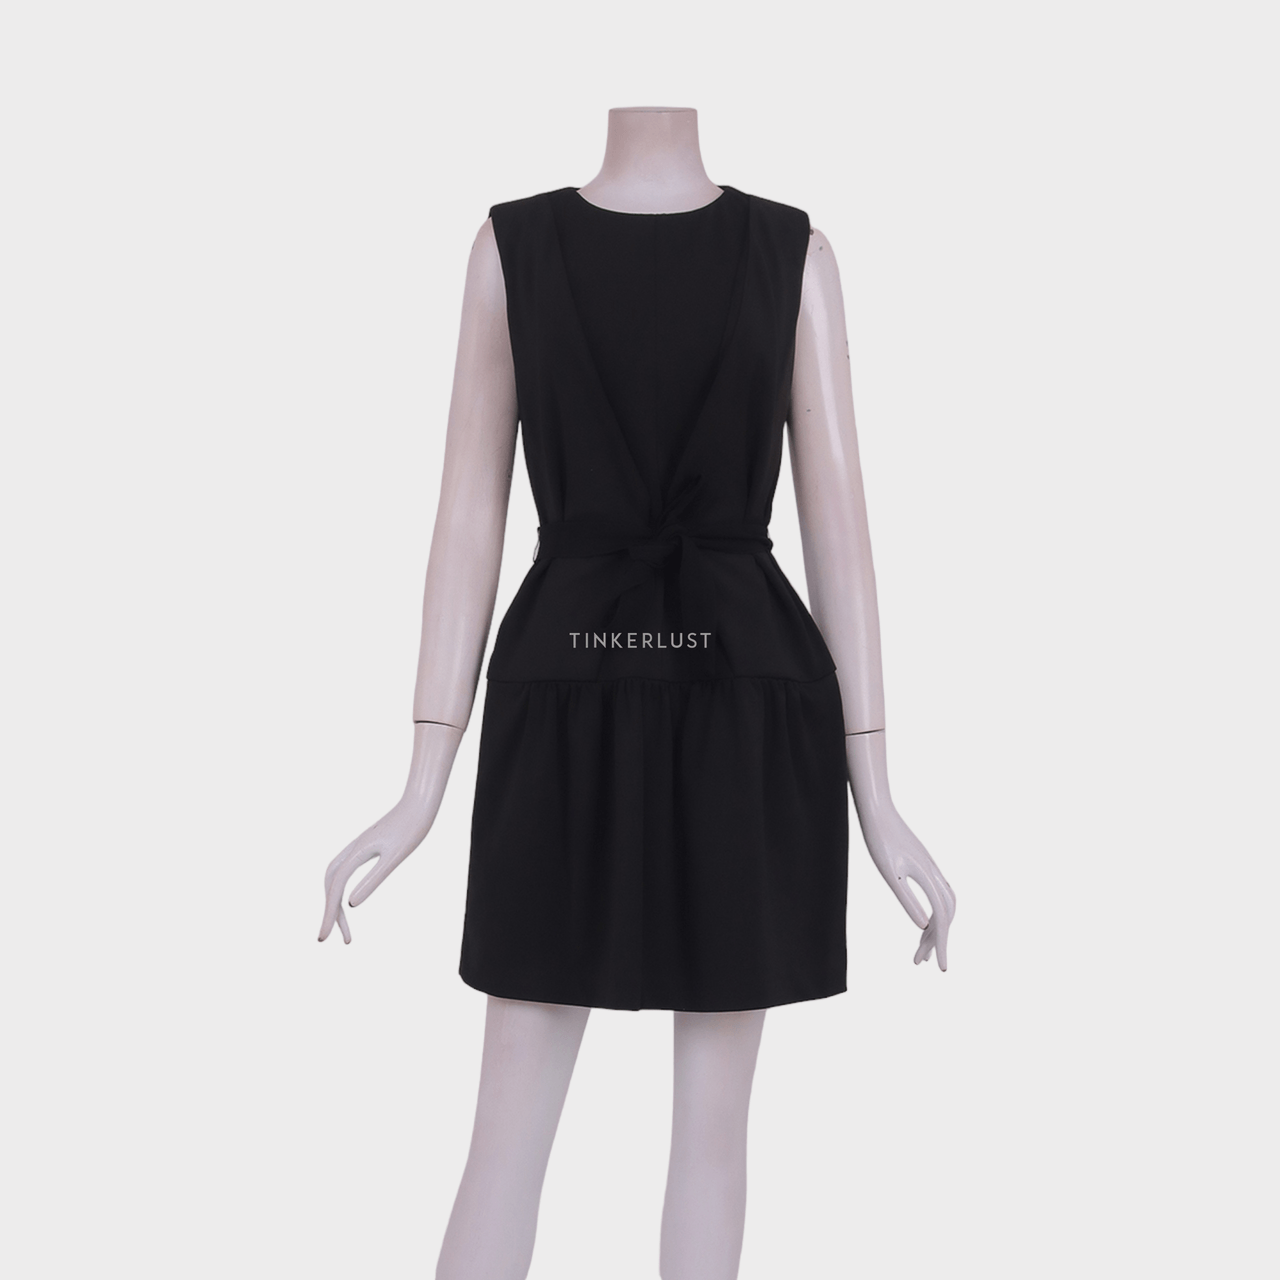 Sportmax Black Mini Dress